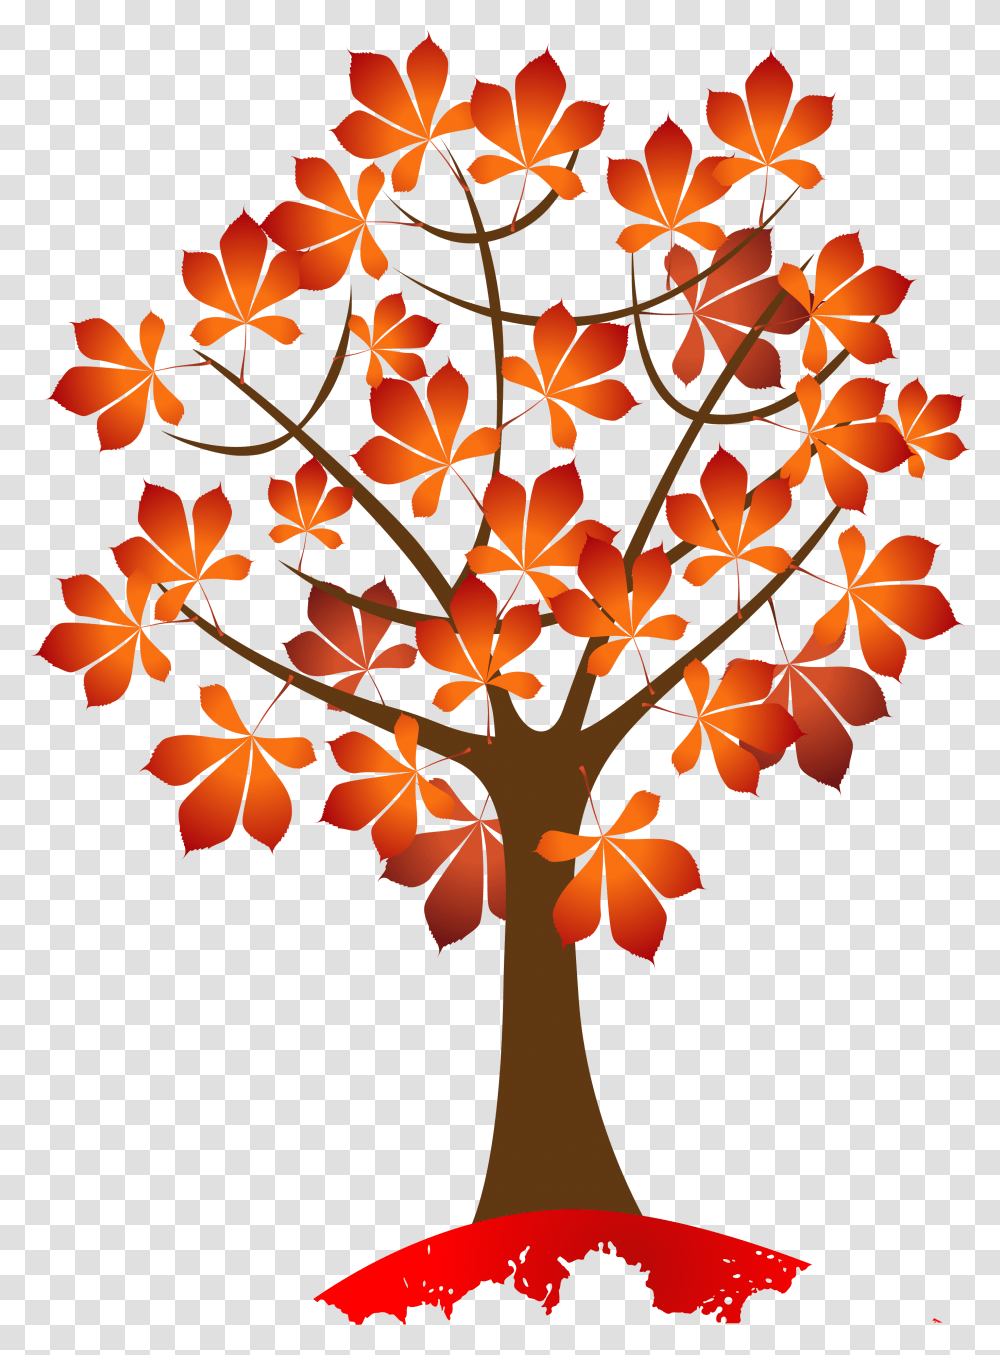 Autumn Tree Clipart, Leaf, Plant, Maple, Maple Leaf Transparent Png